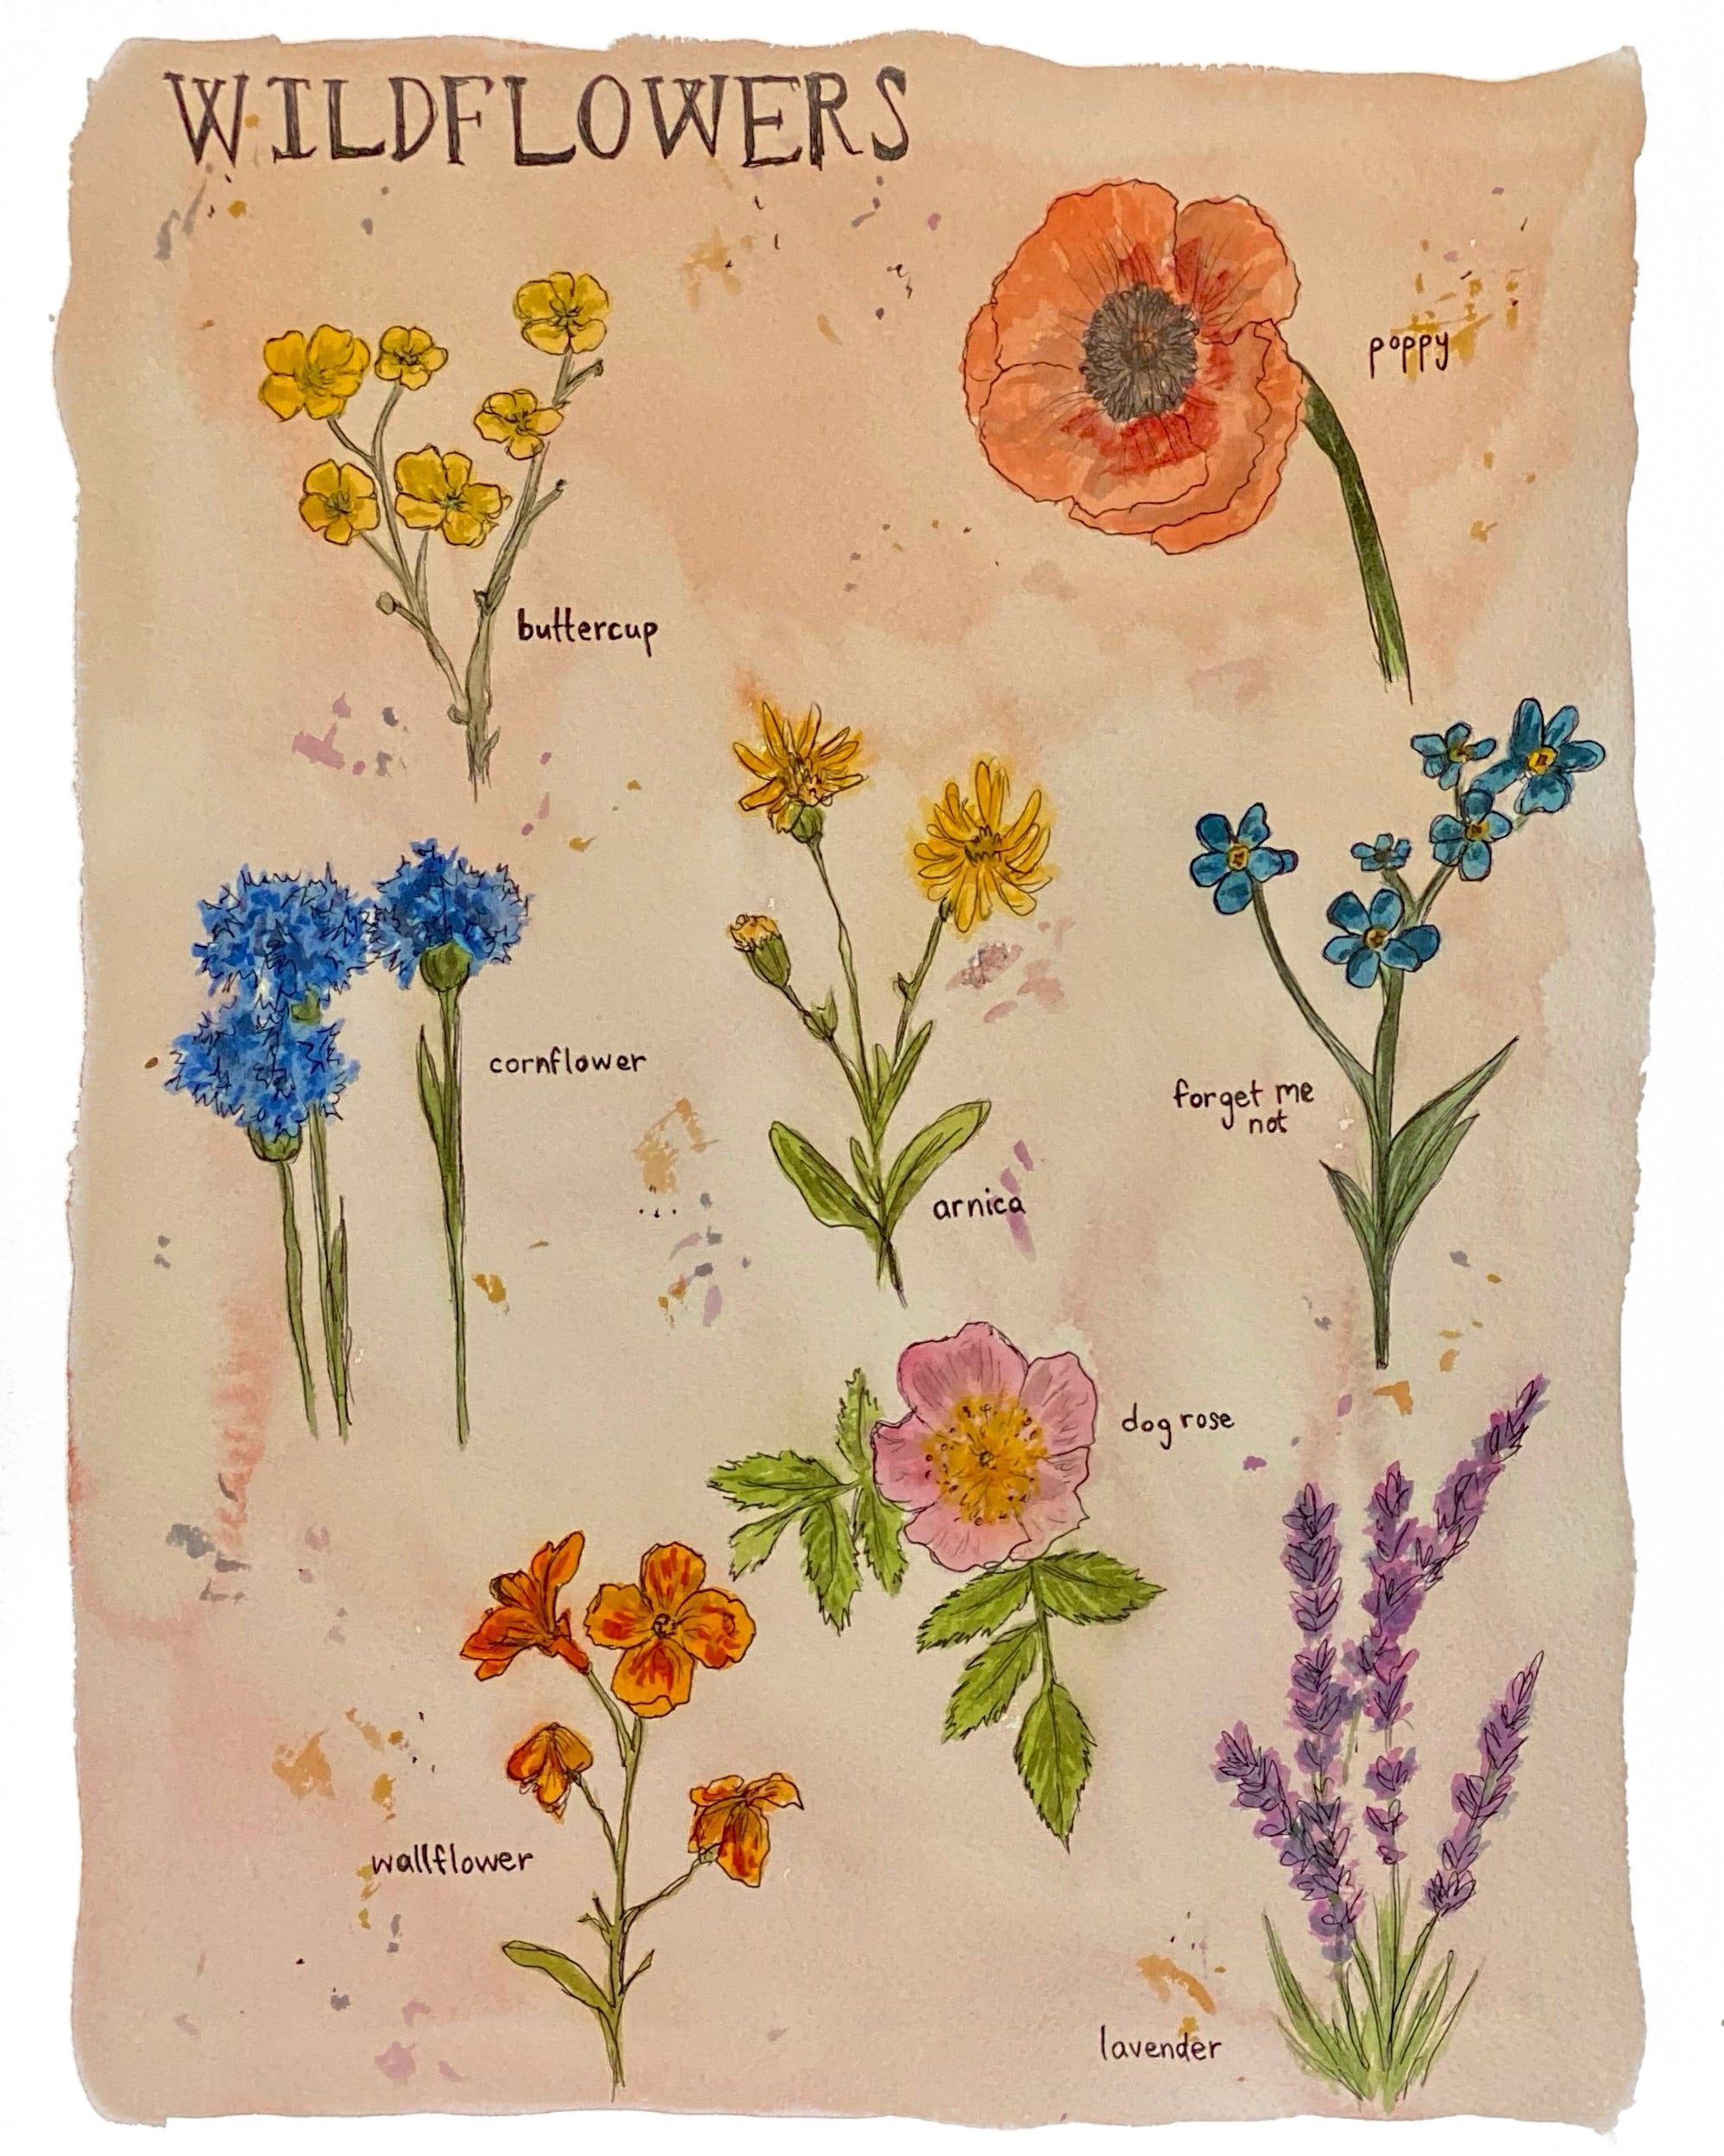 wildflower drawings